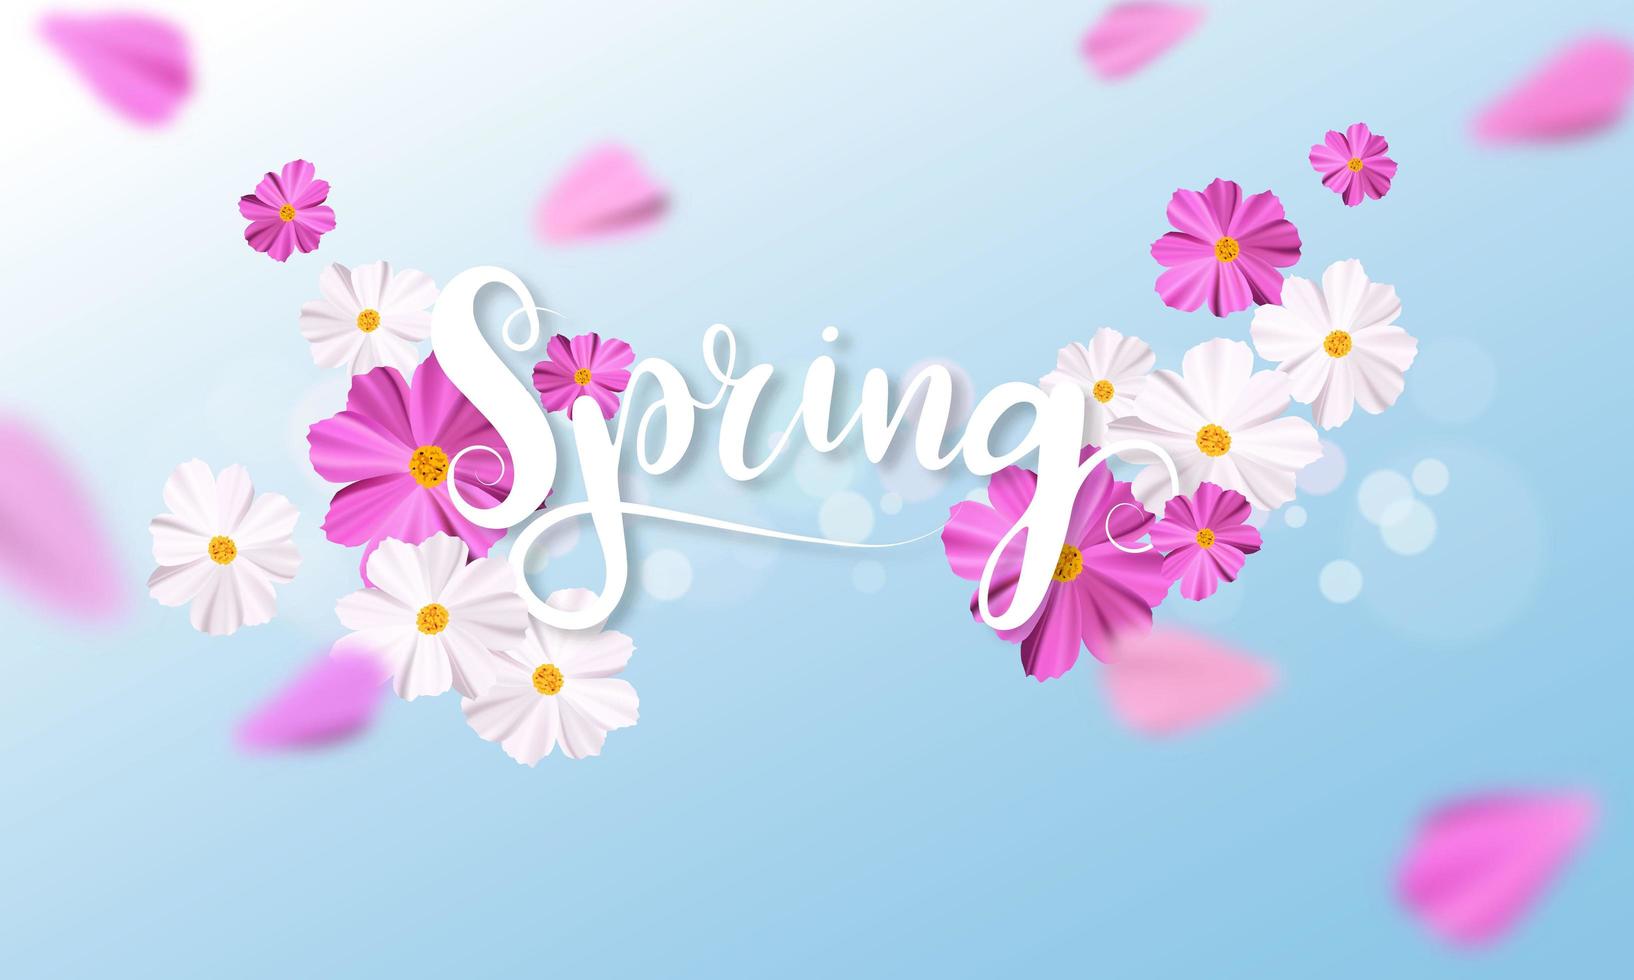 Entwerfen Sie Fahne Frühlingshintergrund mit schöner rosa und weißer Blume vektor